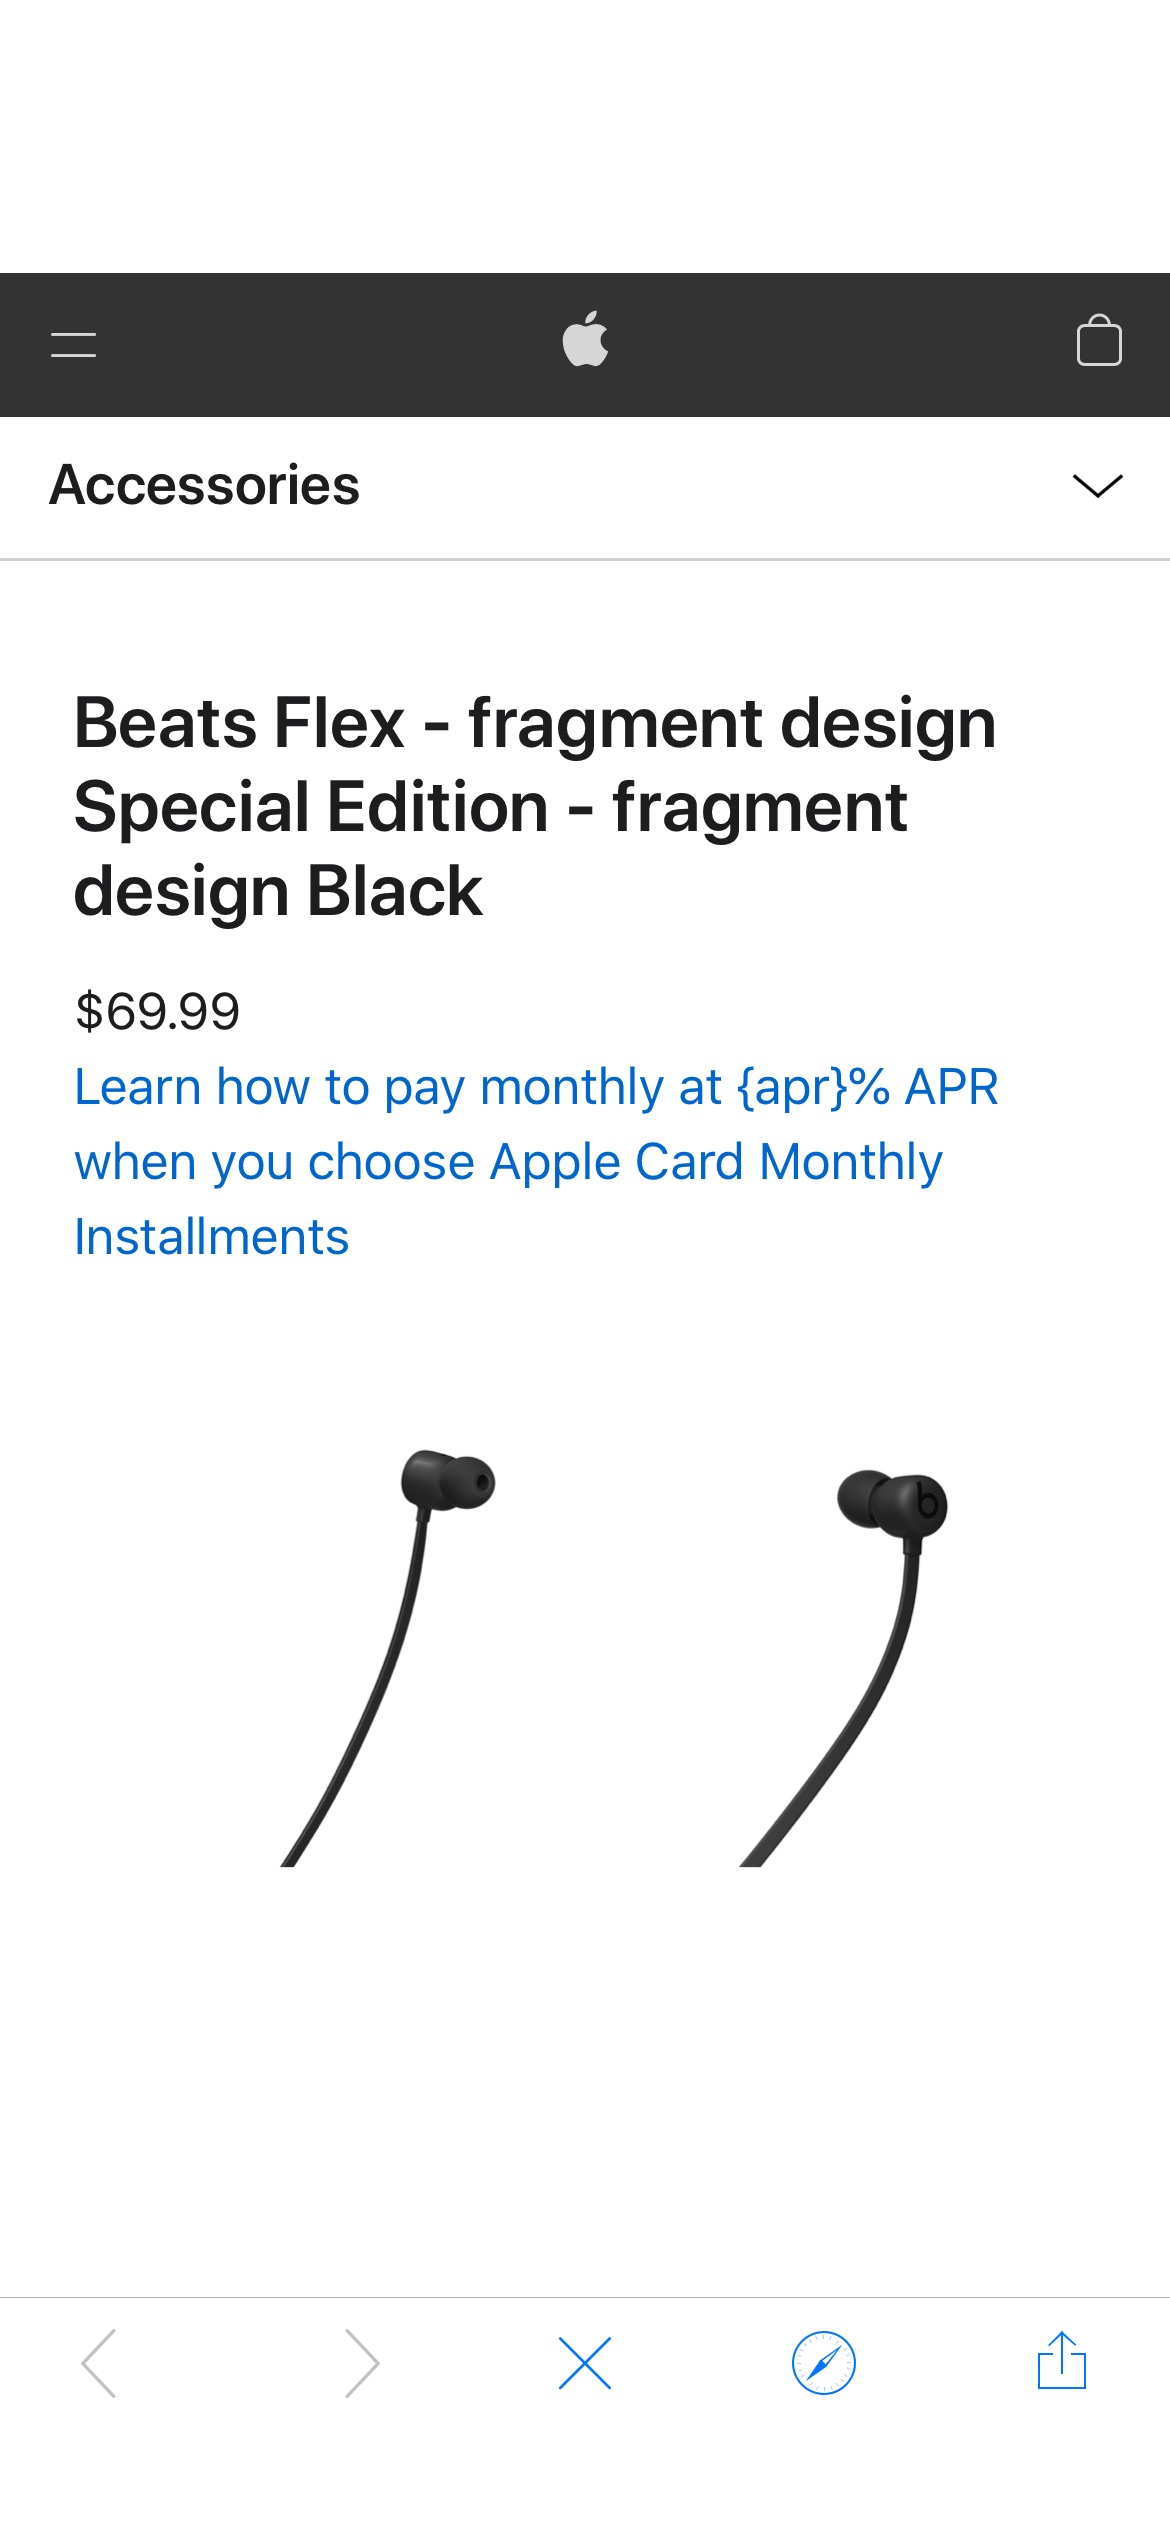 Beats Flex - fragment design Special Edition - fragment design Black - Apple 
beats 与 fragment限量款联名耳机